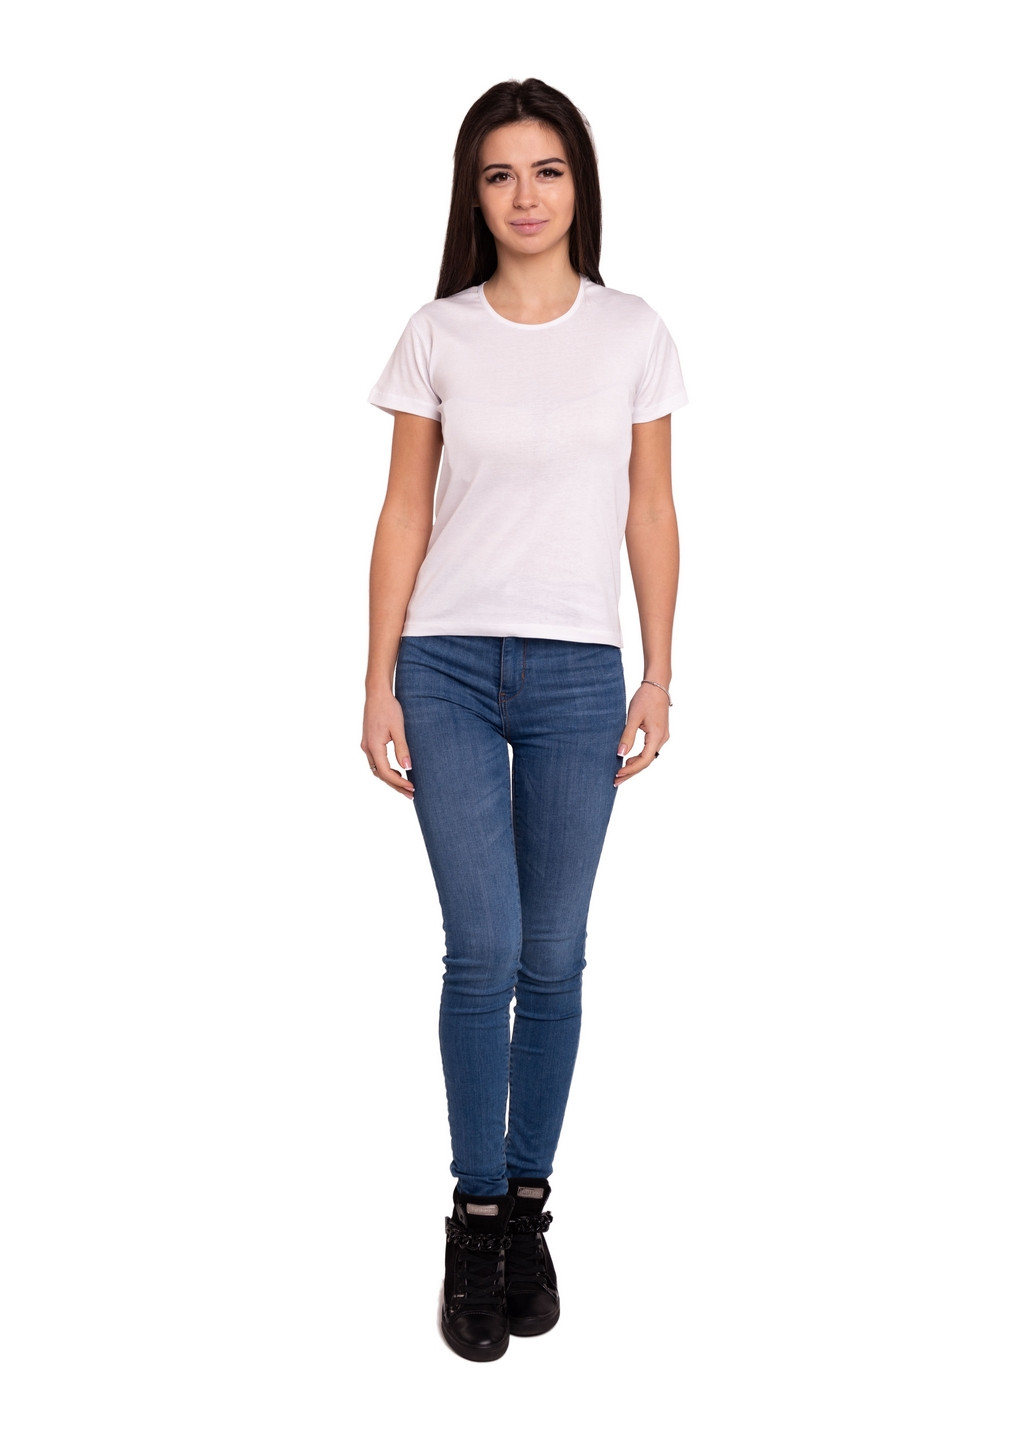 Біла всесезон футболка жіноча Наталюкс 21-2302